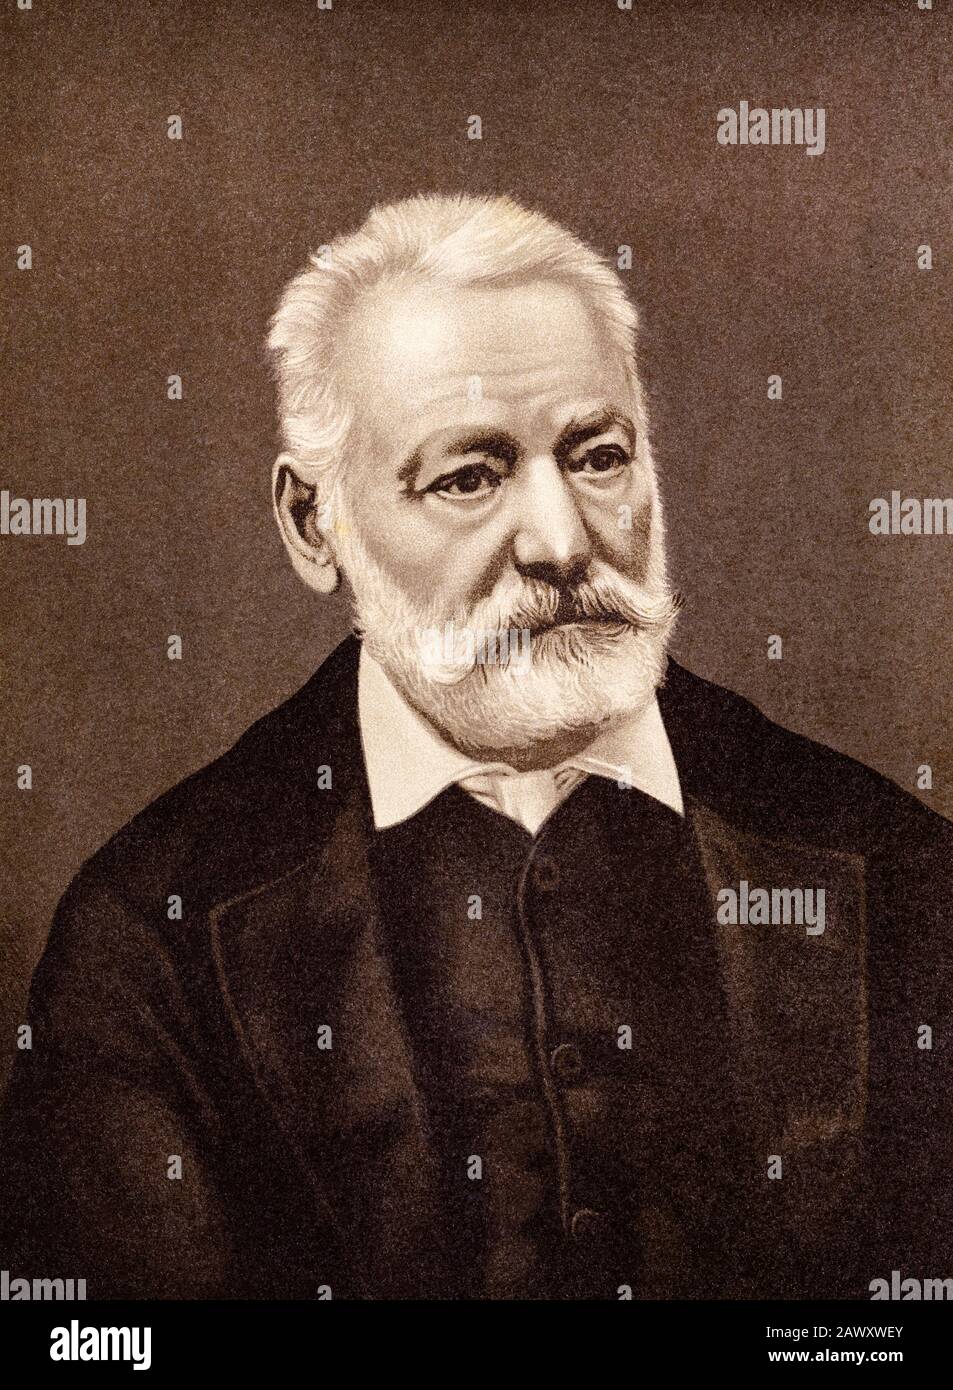 Victor Marie Hugo (Besançon, 26 Février 1802 - Paris, 22 Mai 1885). Il était poète, dramaturge et romancier français Banque D'Images